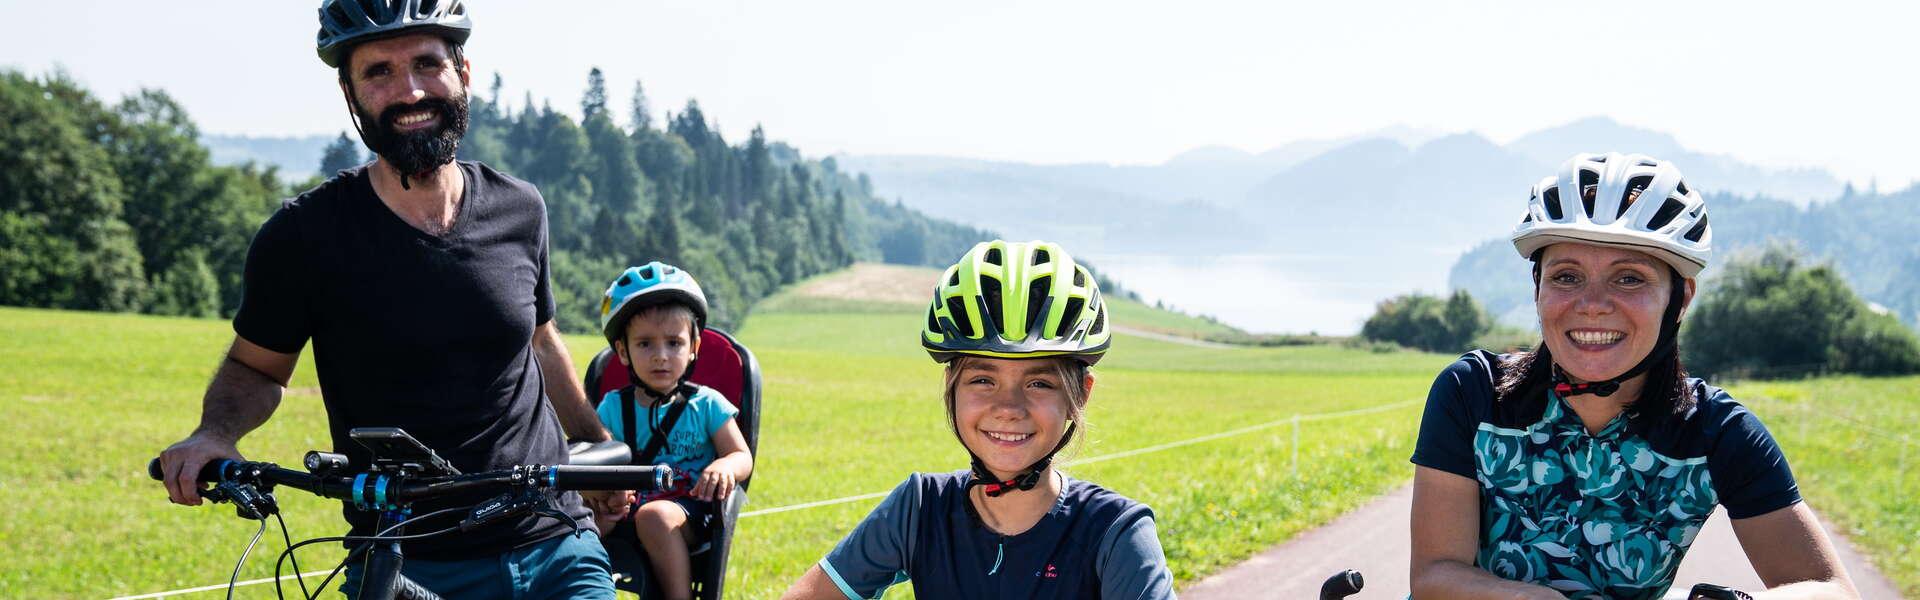 Czteroosobowa uśmiechnięta rodzina na wycieczce rowerowej